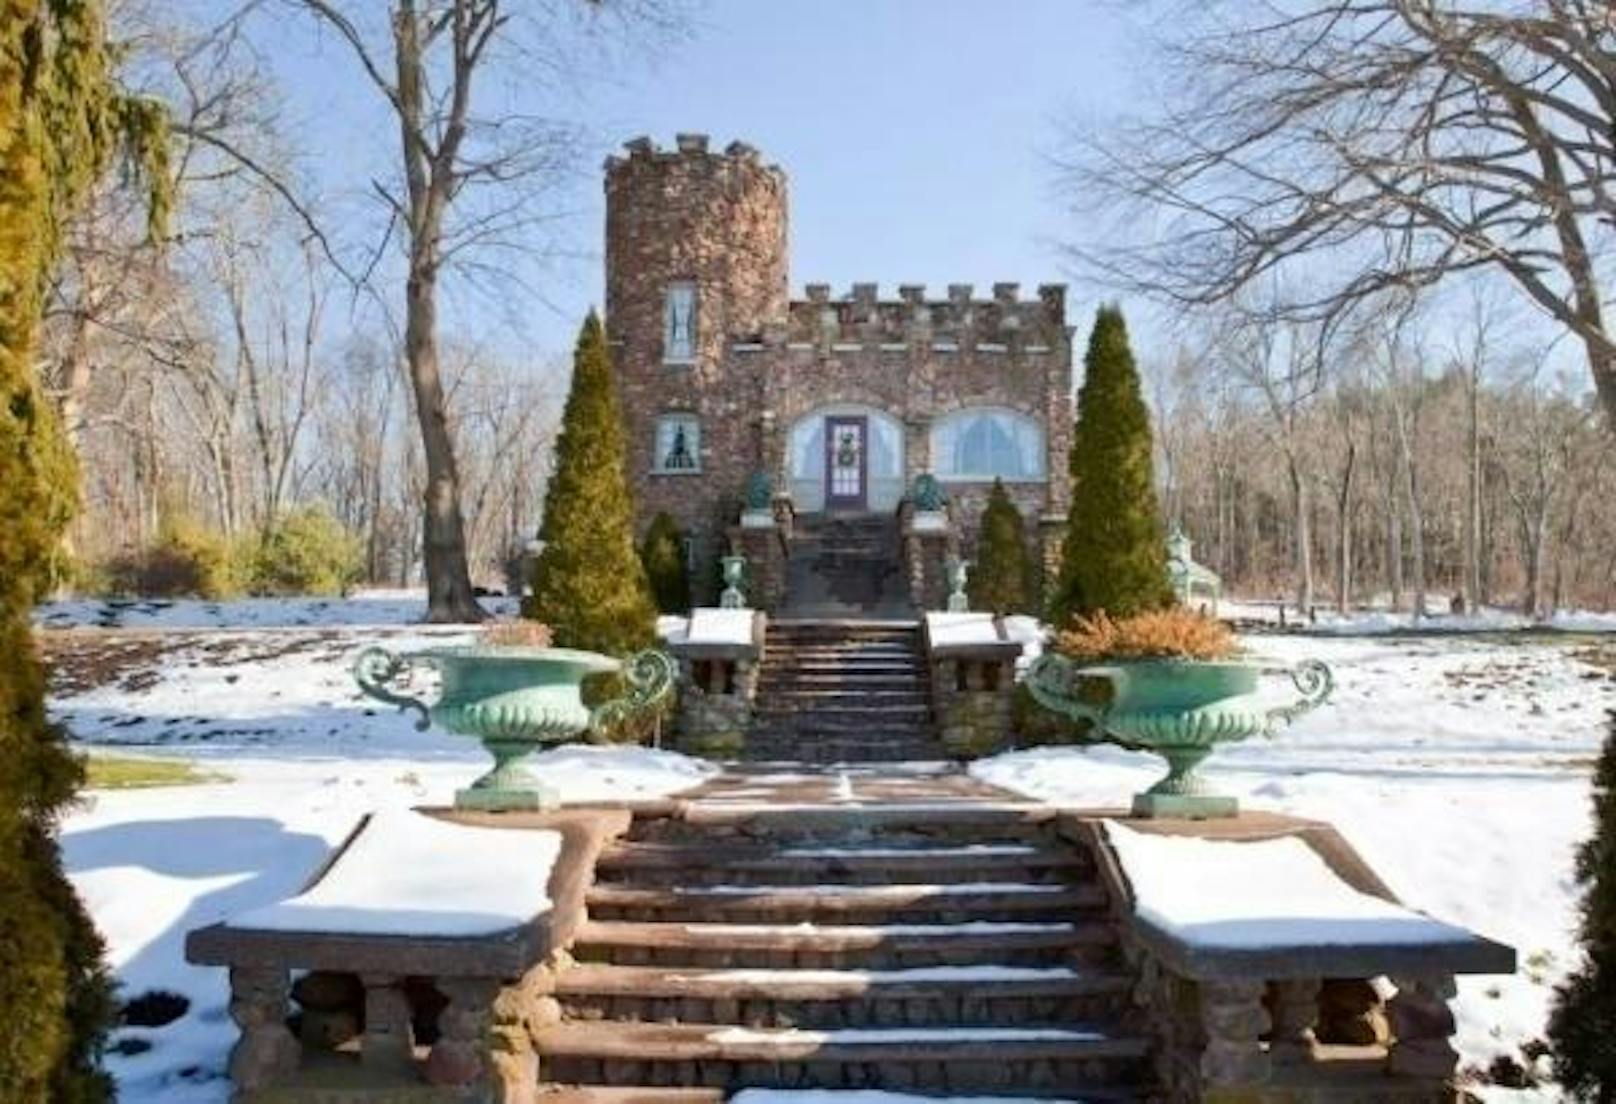 <b>Aborn Castle, Ellington, USA</b>
Dieses Märchenschloss befindet sich in Ellington, einer Ortschaft in Connecticut. Gebaut hat es 1917 eine Familie nach einer Reise nach England.